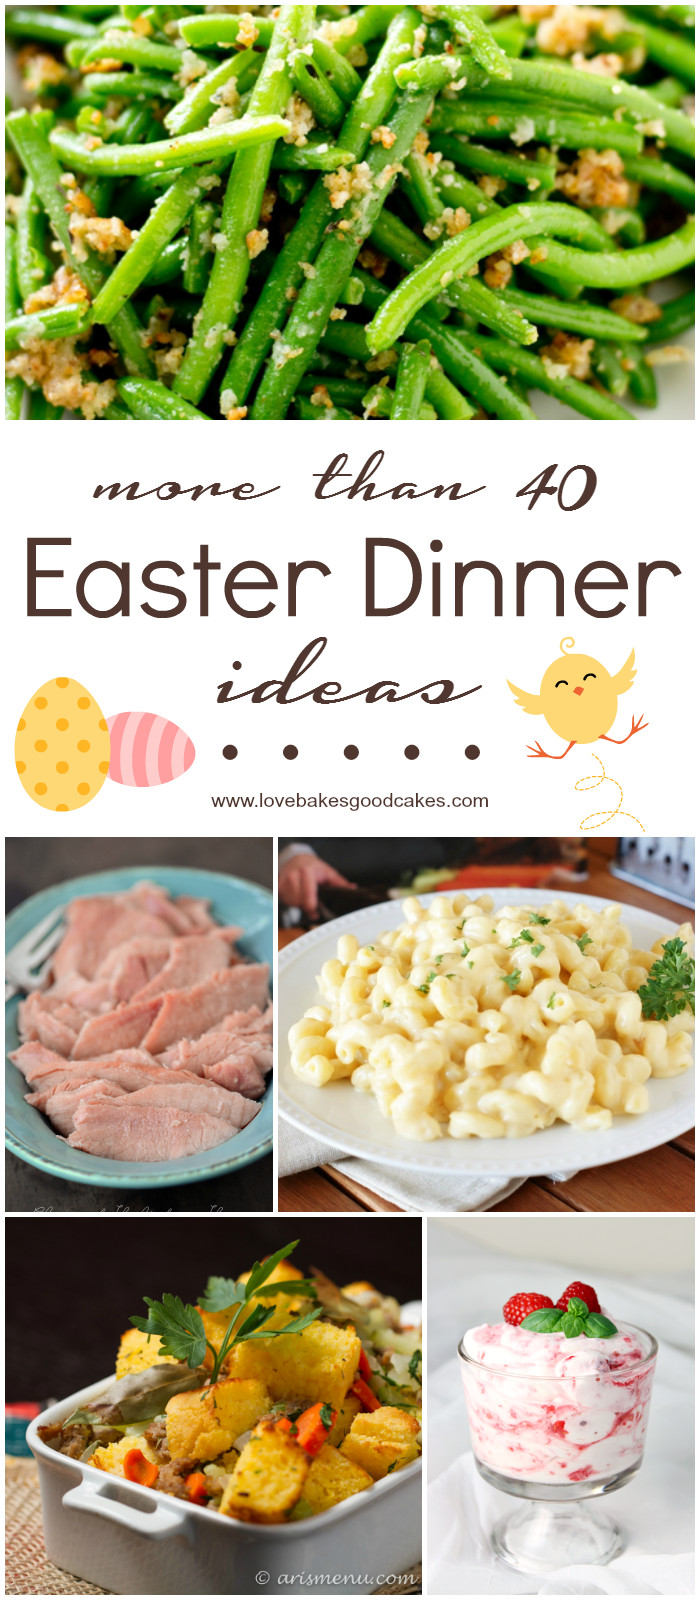 Easter Sunday Dinner Ideas
 More than 40 Easter Dinner Ideas